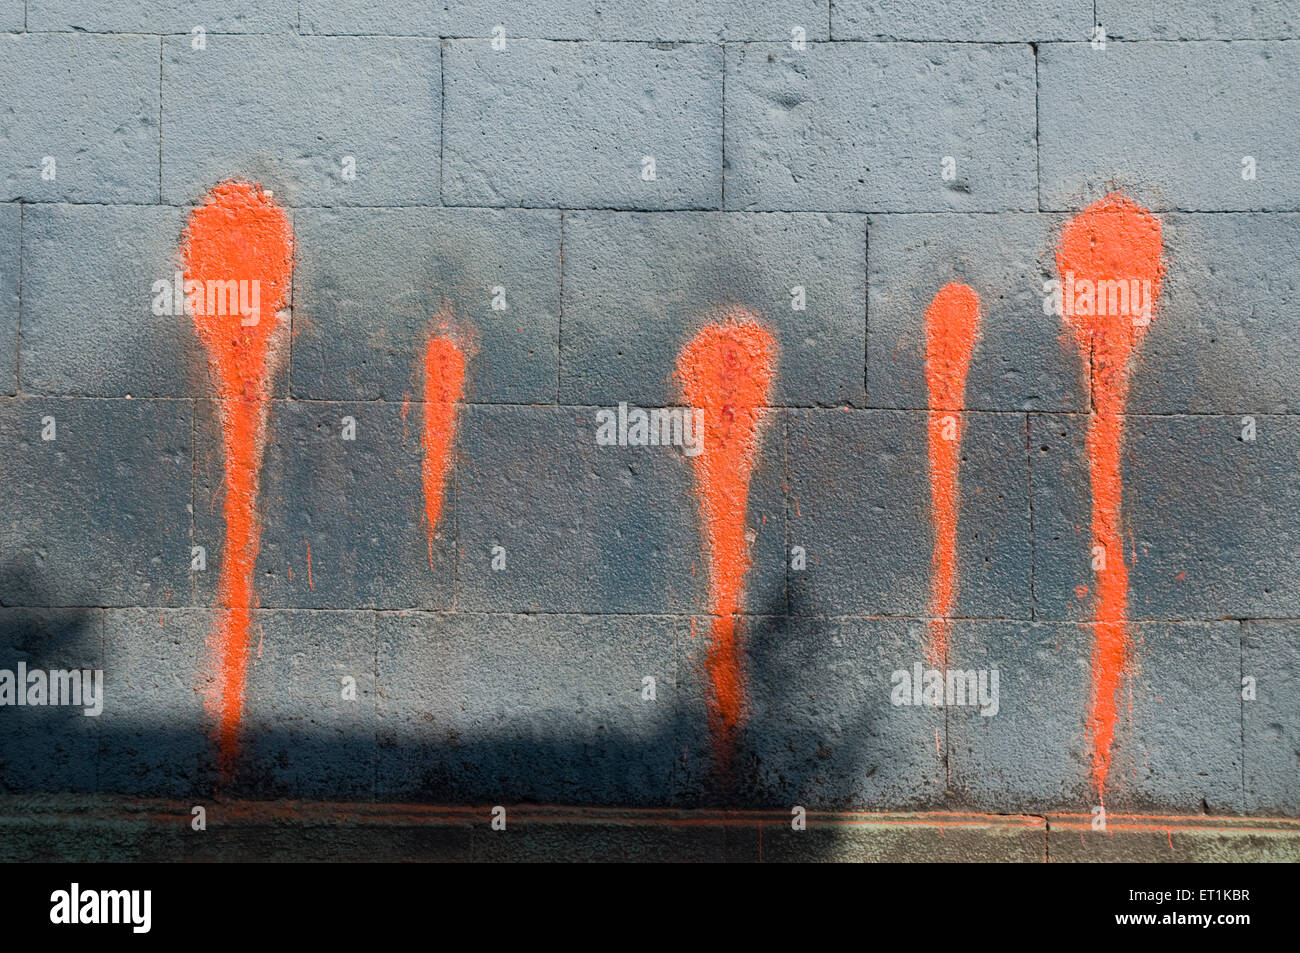 Couleur orange en forme de goutte à goutte sur les murs Siddhatek Maharashtra Inde Asie Banque D'Images